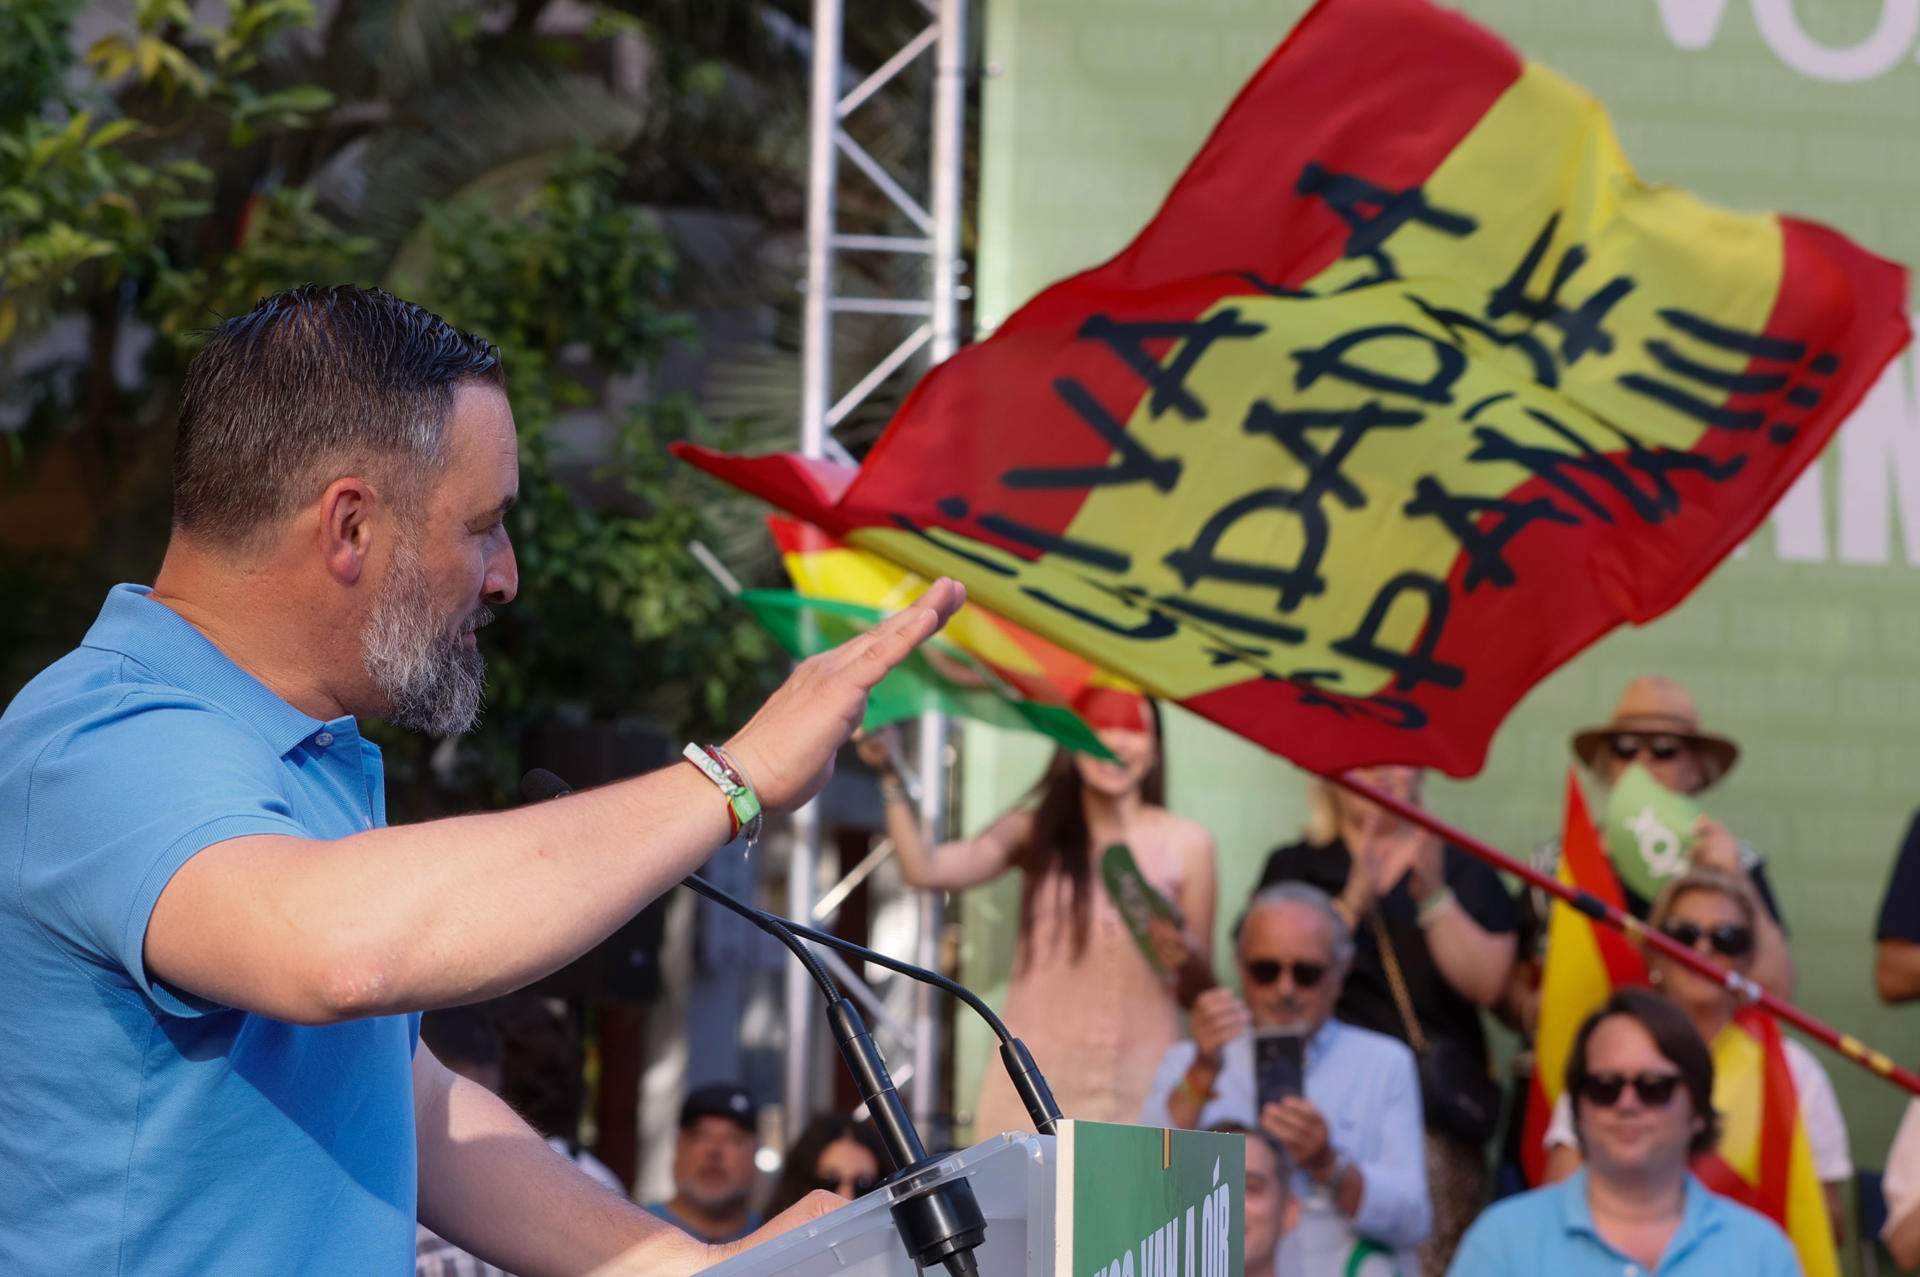 L'onada ultraconservadora dispara Vox i els seus aliats: tercera força a Espanya i més forts que mai a Europa